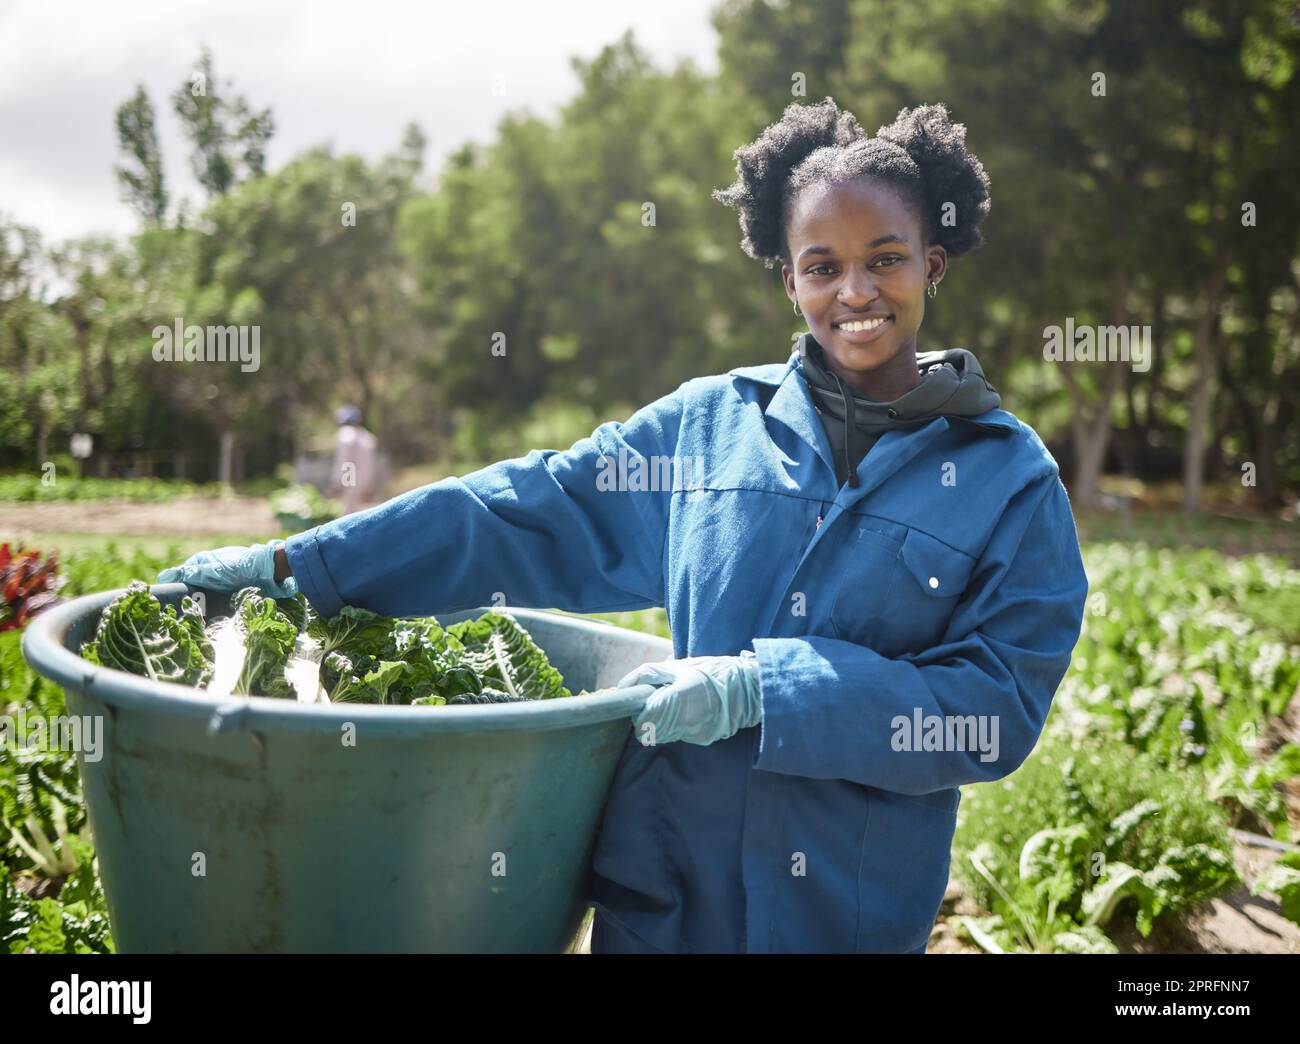 Main agricole, agriculteur agricole et travailleur de la durabilité travaillant sur une croissance végétale verte dans un champ. Environnement naturel et jardin durable et écologie avec une femme agricole à la campagne Banque D'Images